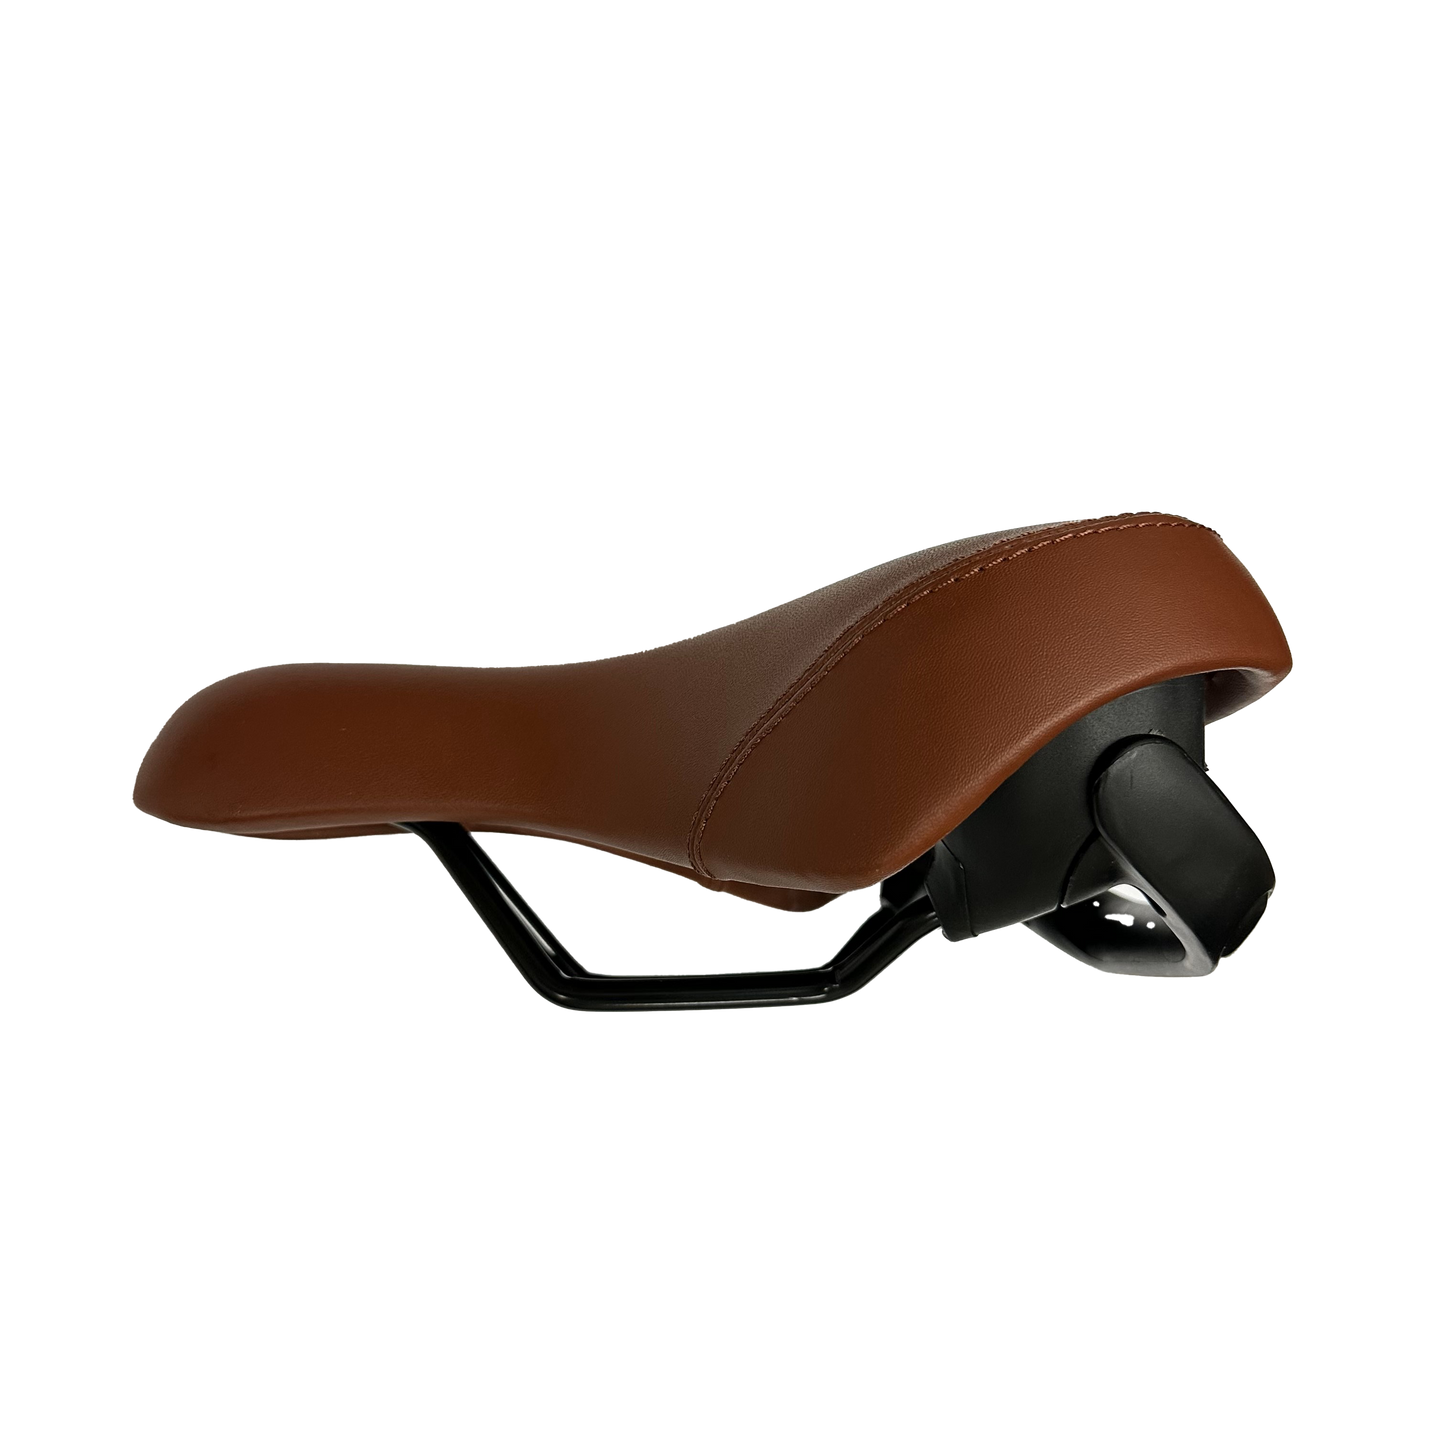 Velo Plush Leather Saddle